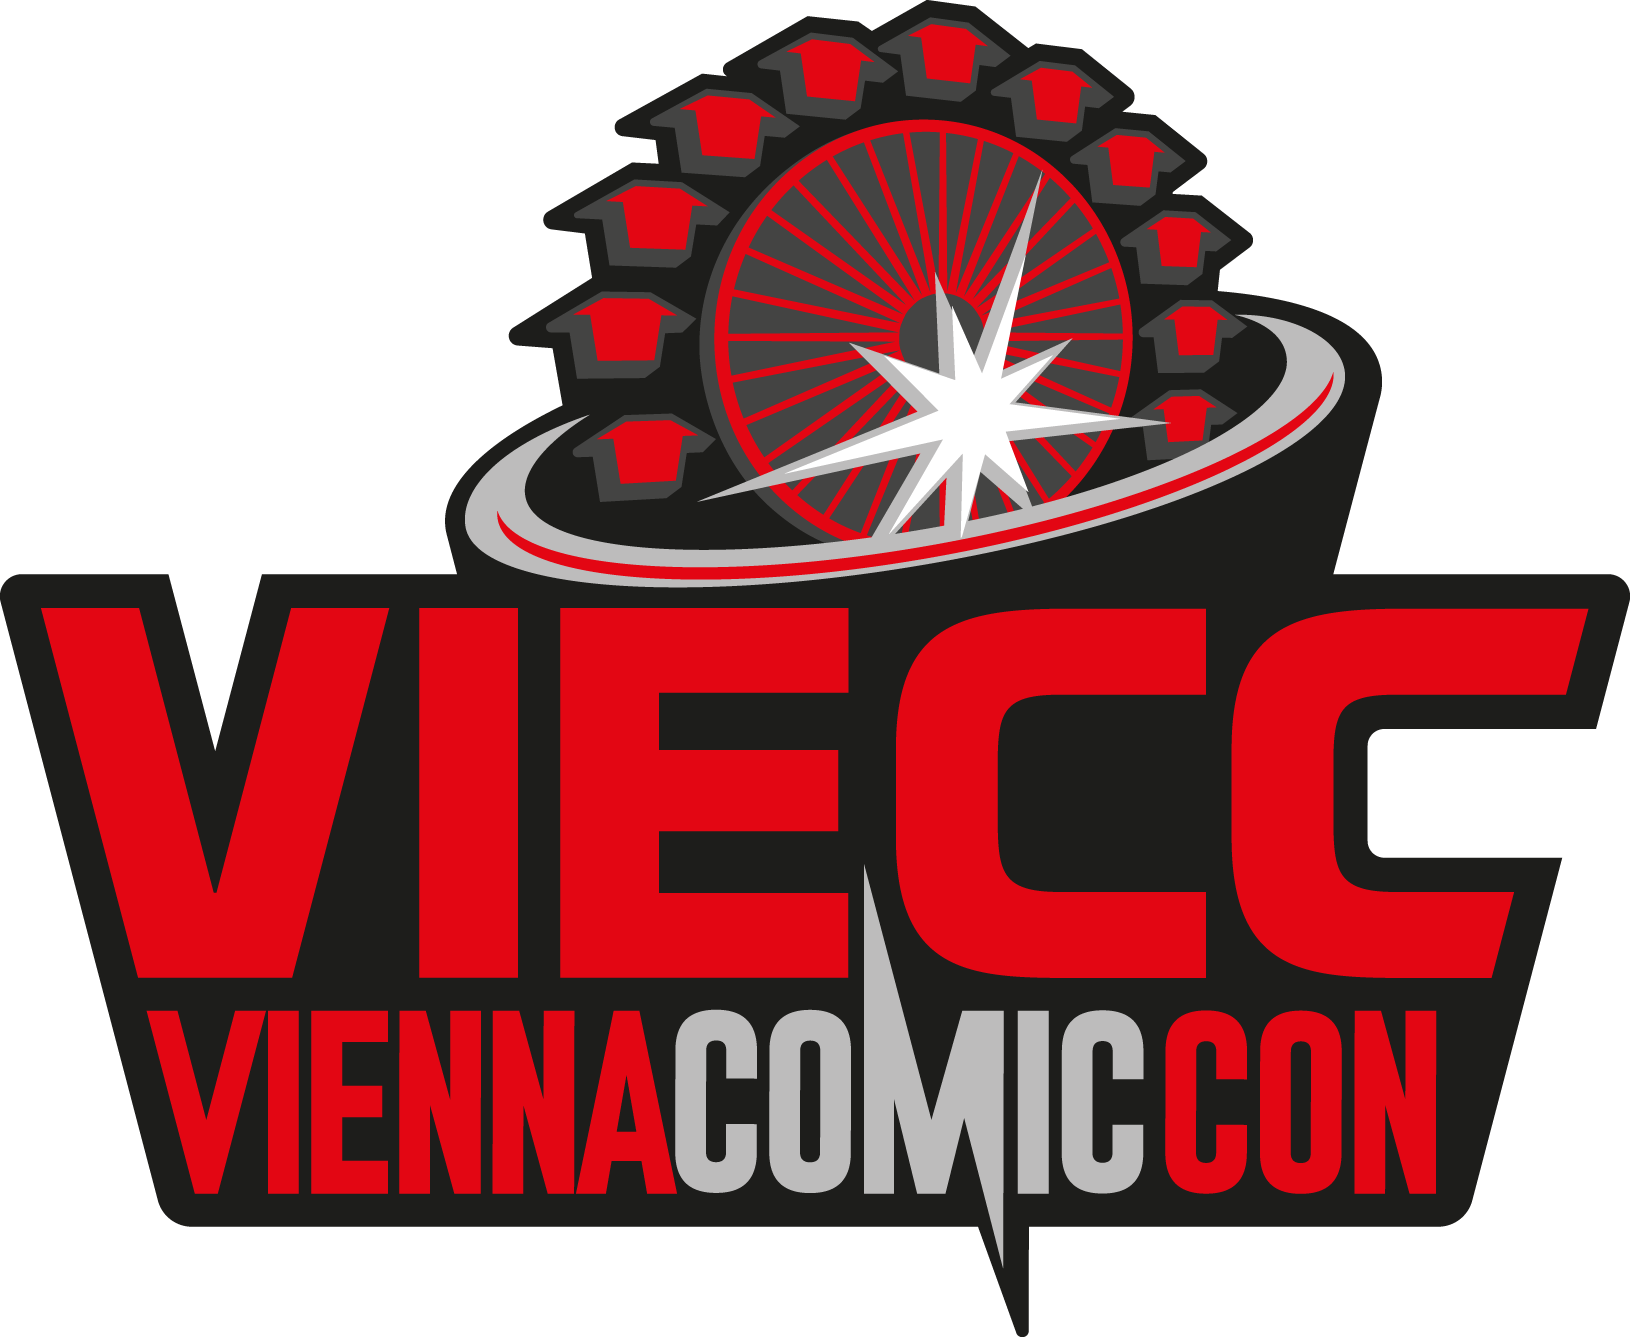 VIECC® Vienna Comic Con